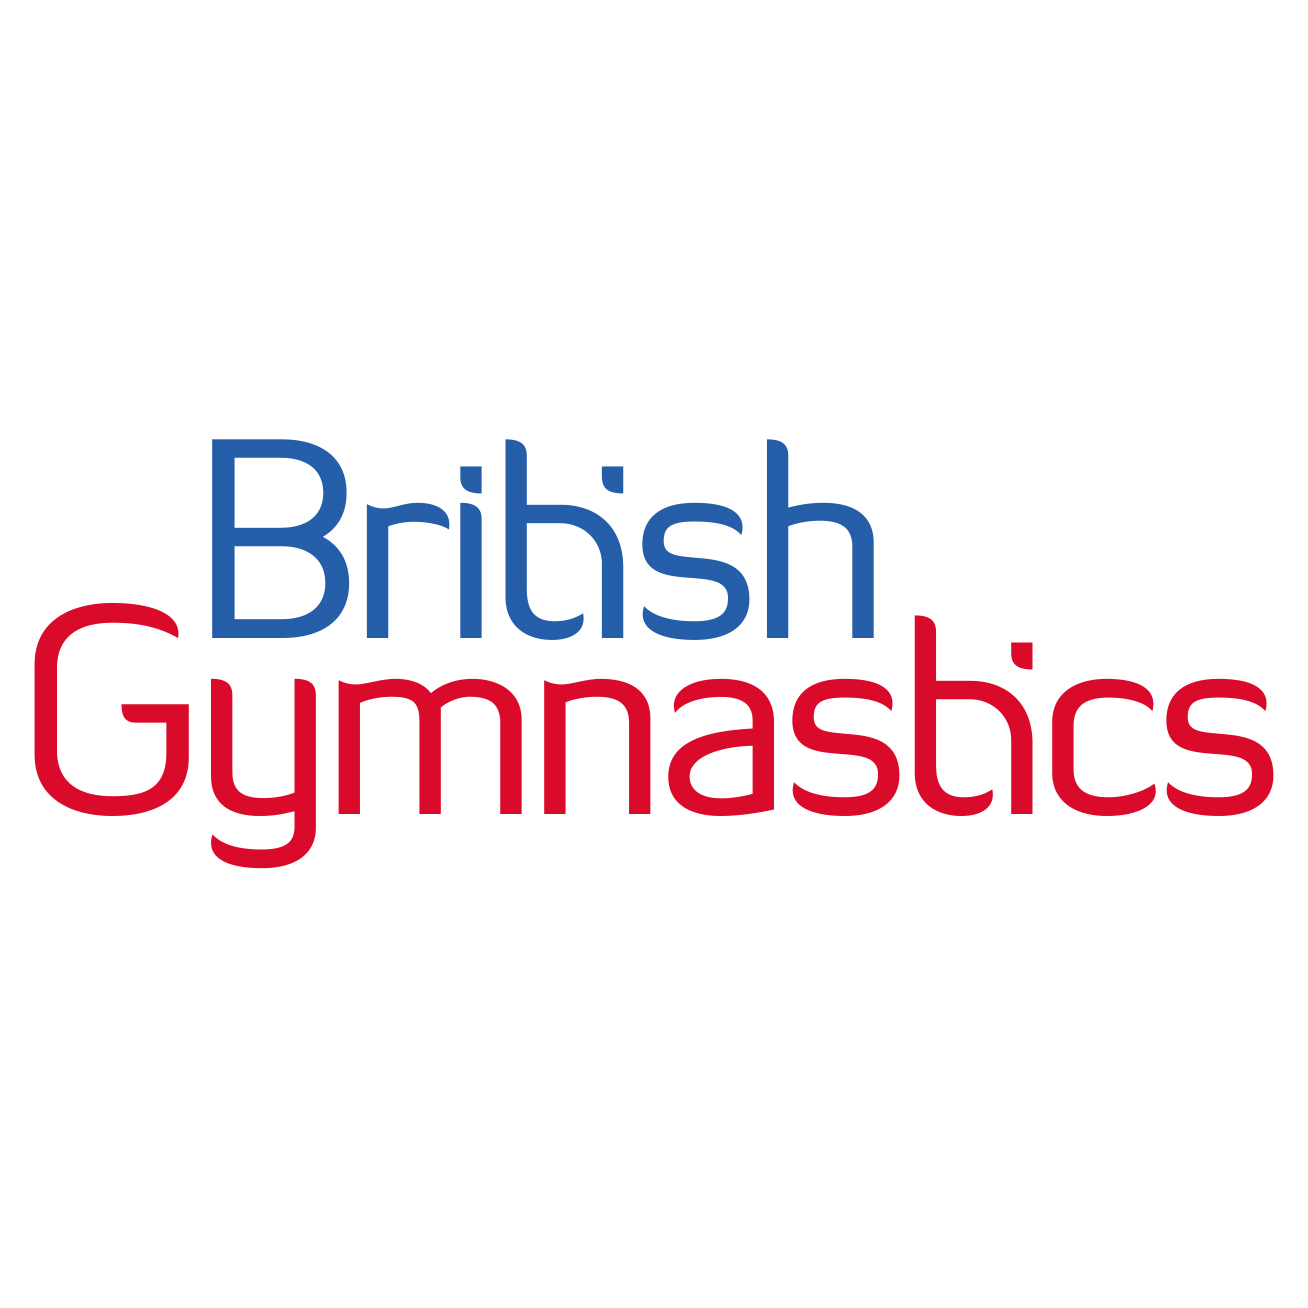 Women's Artistic Head Coach - Essex - British Gymnastics